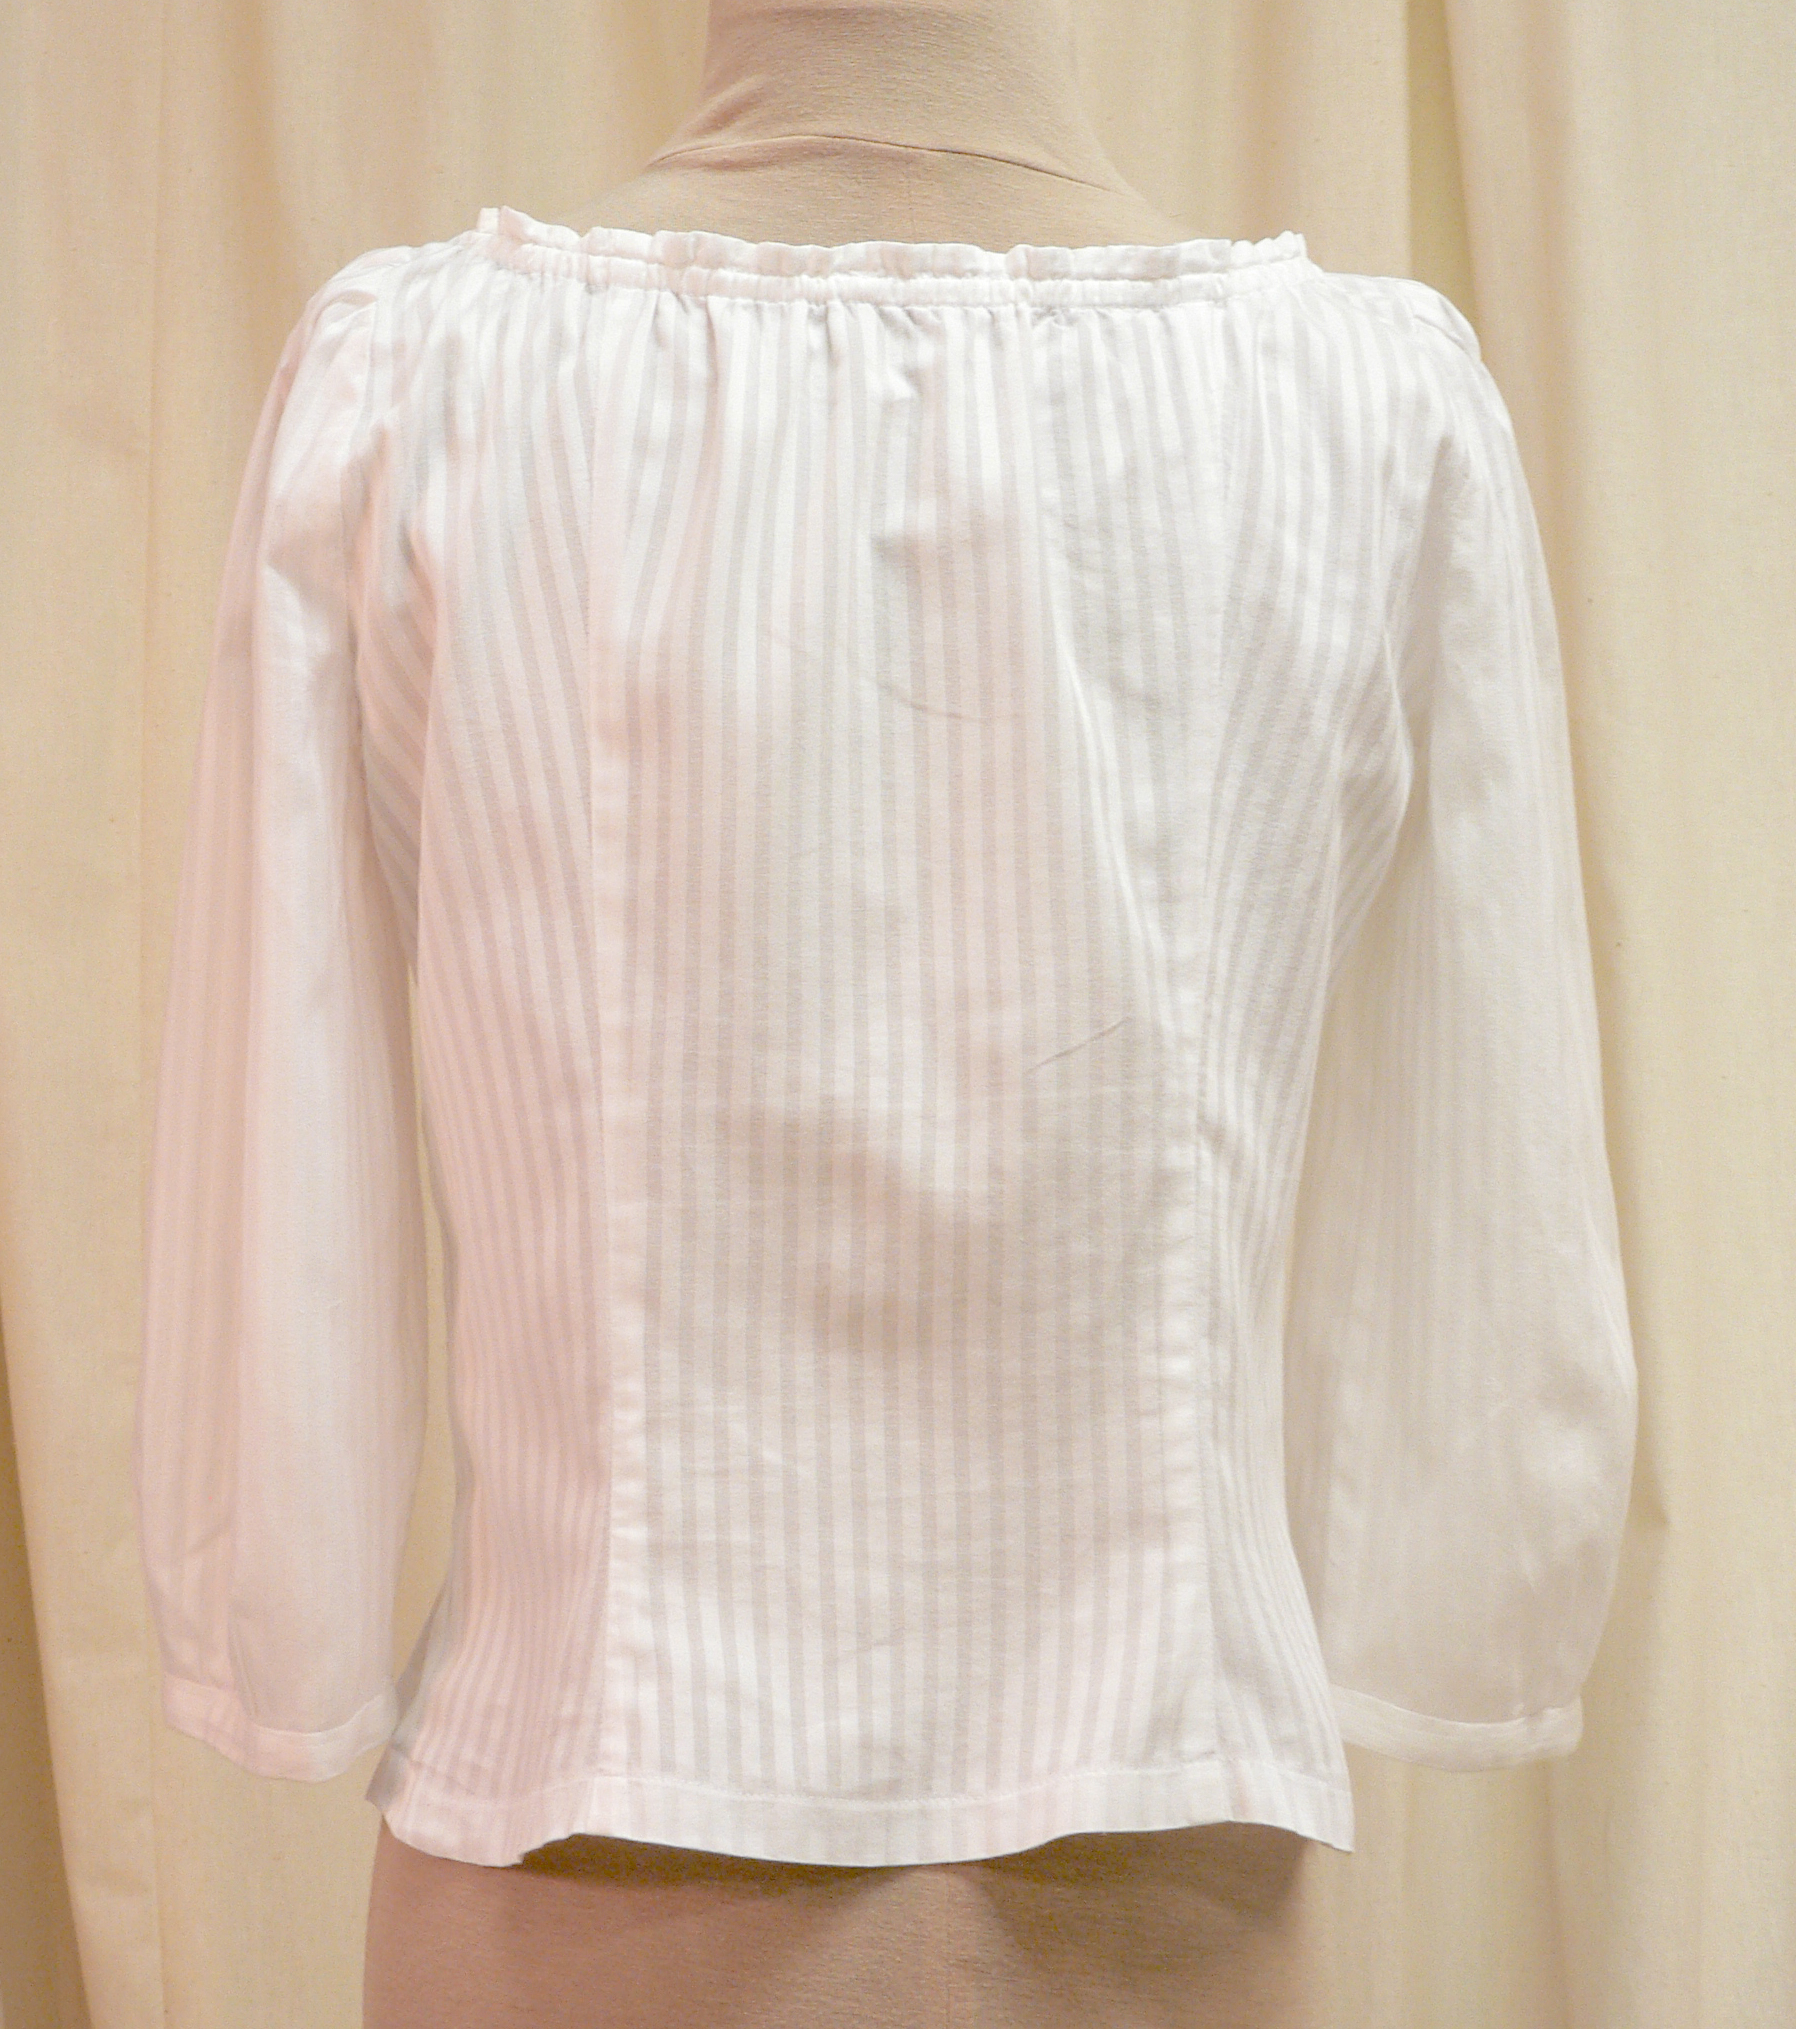 blouse07_back.jpg